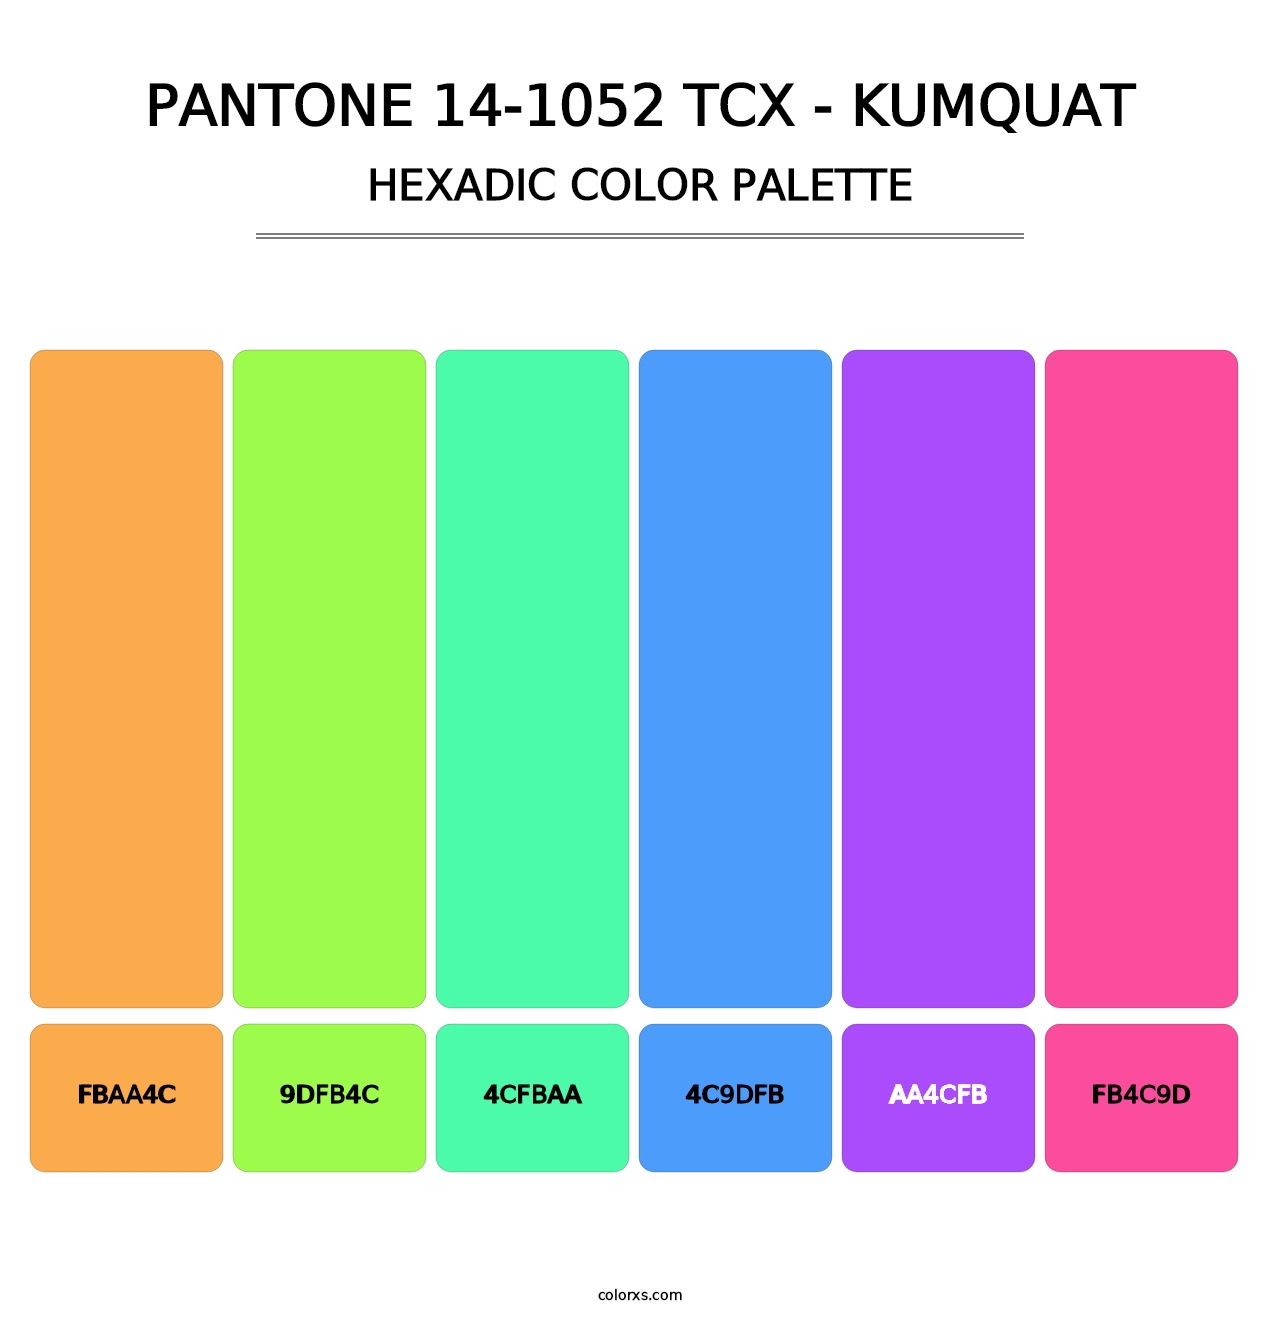 PANTONE 14-1052 TCX - Kumquat - Hexadic Color Palette